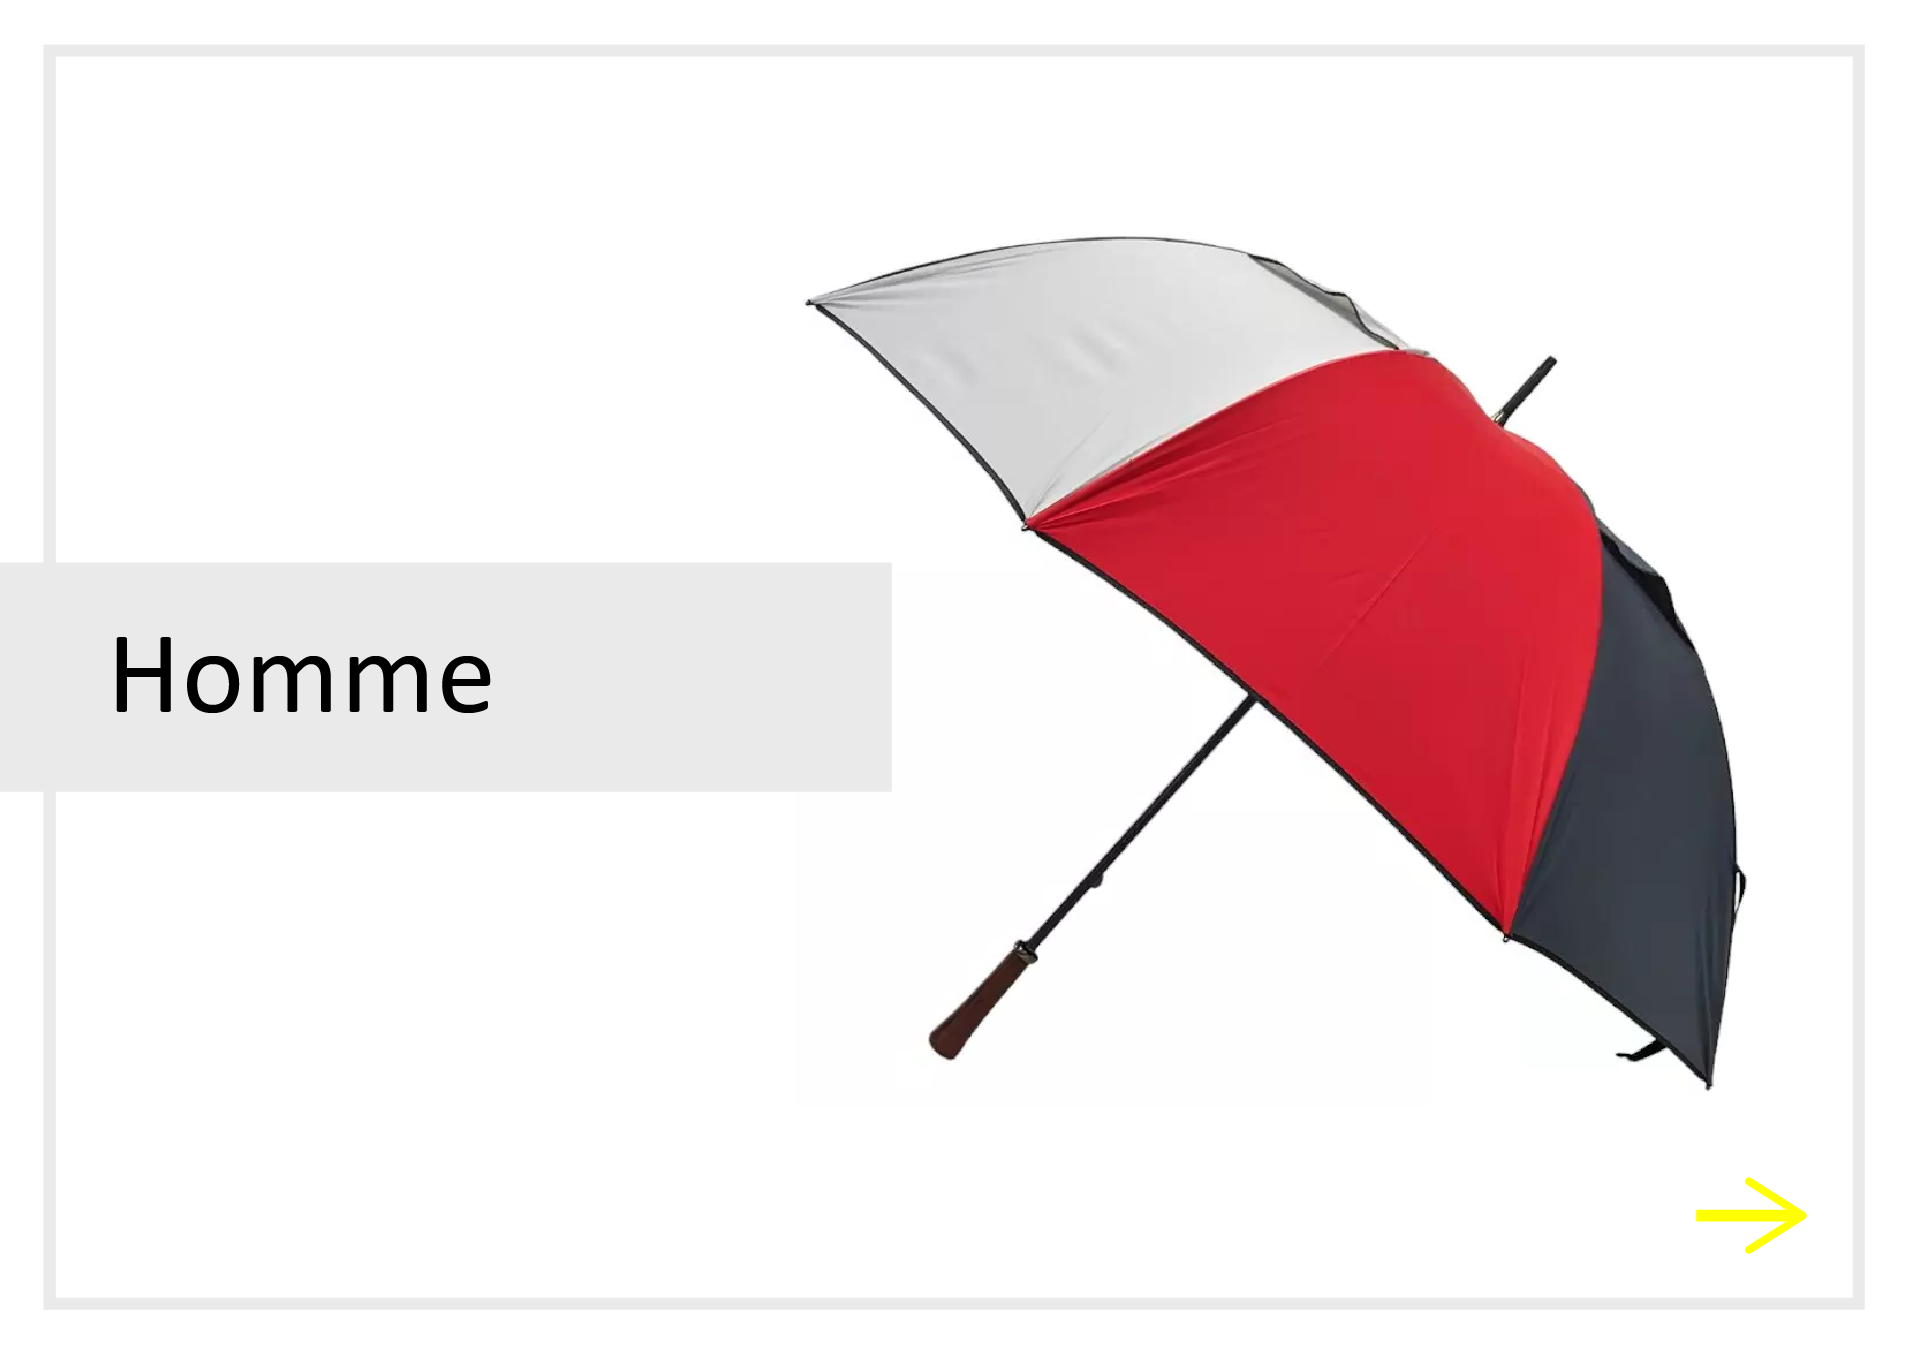 lien parapluies homme